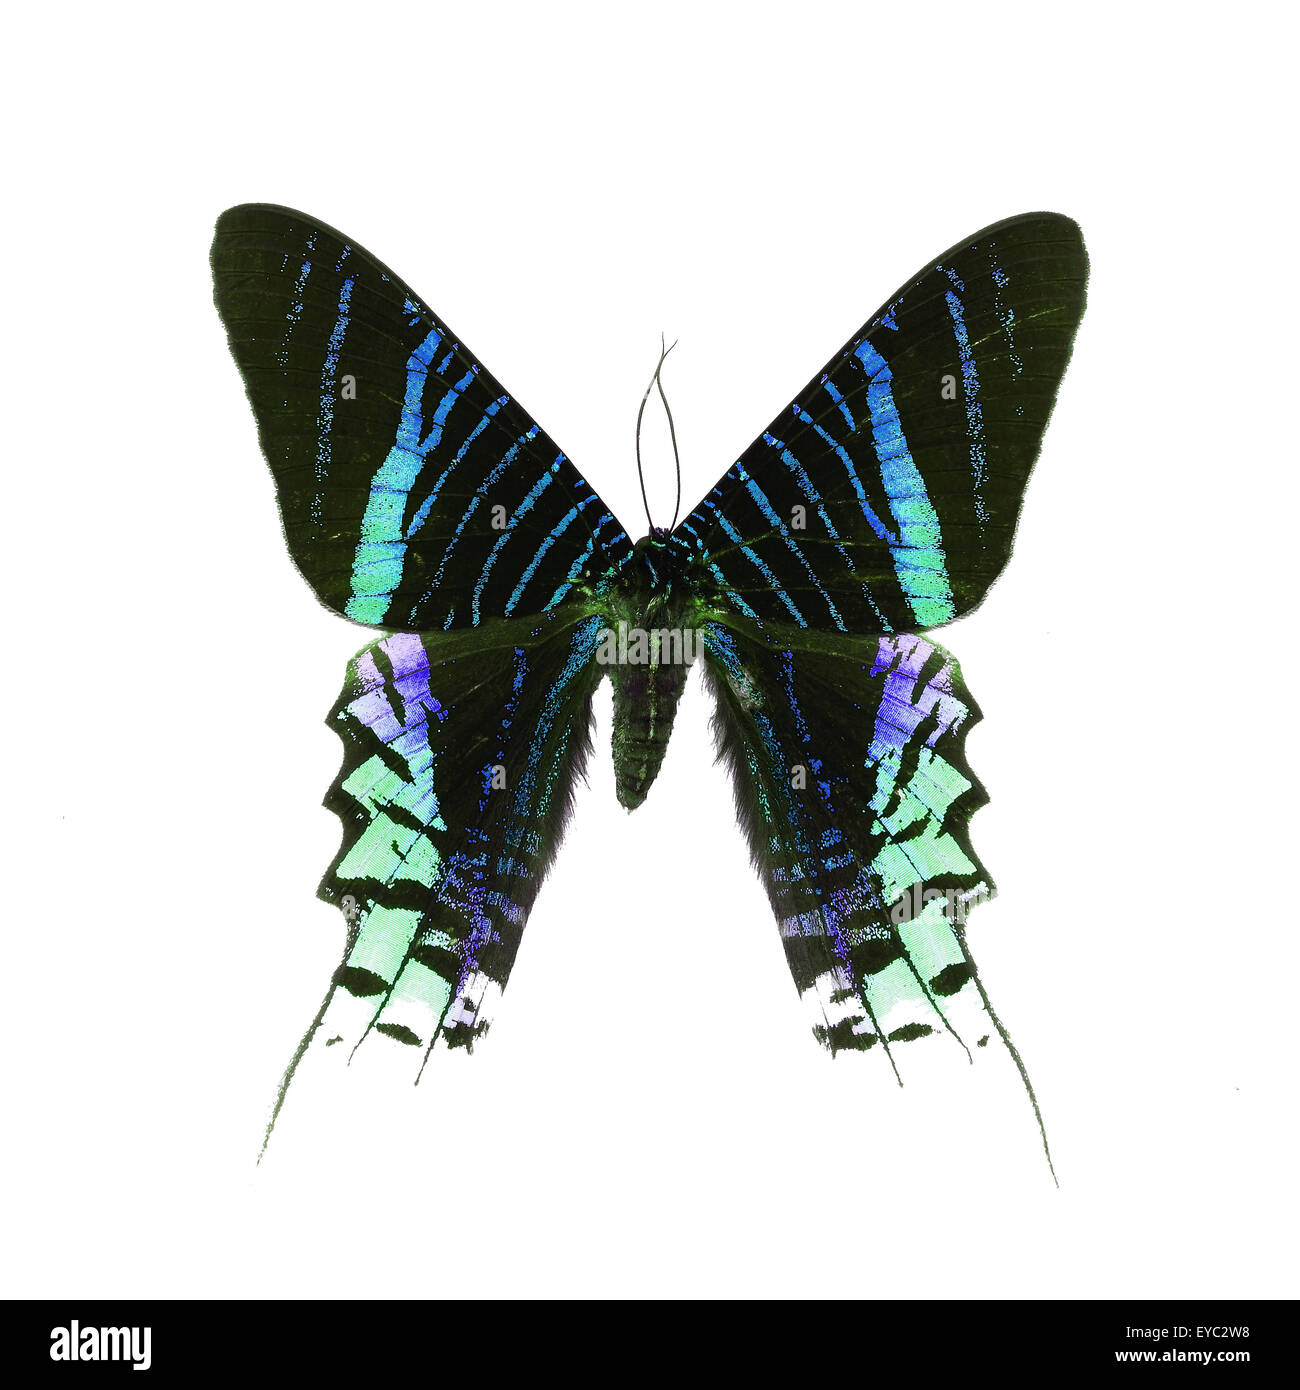 Splendida farfalla verde, giorno Flying Moth (Urania leilus) in fantasia profilo colore, isolato su sfondo bianco Foto Stock